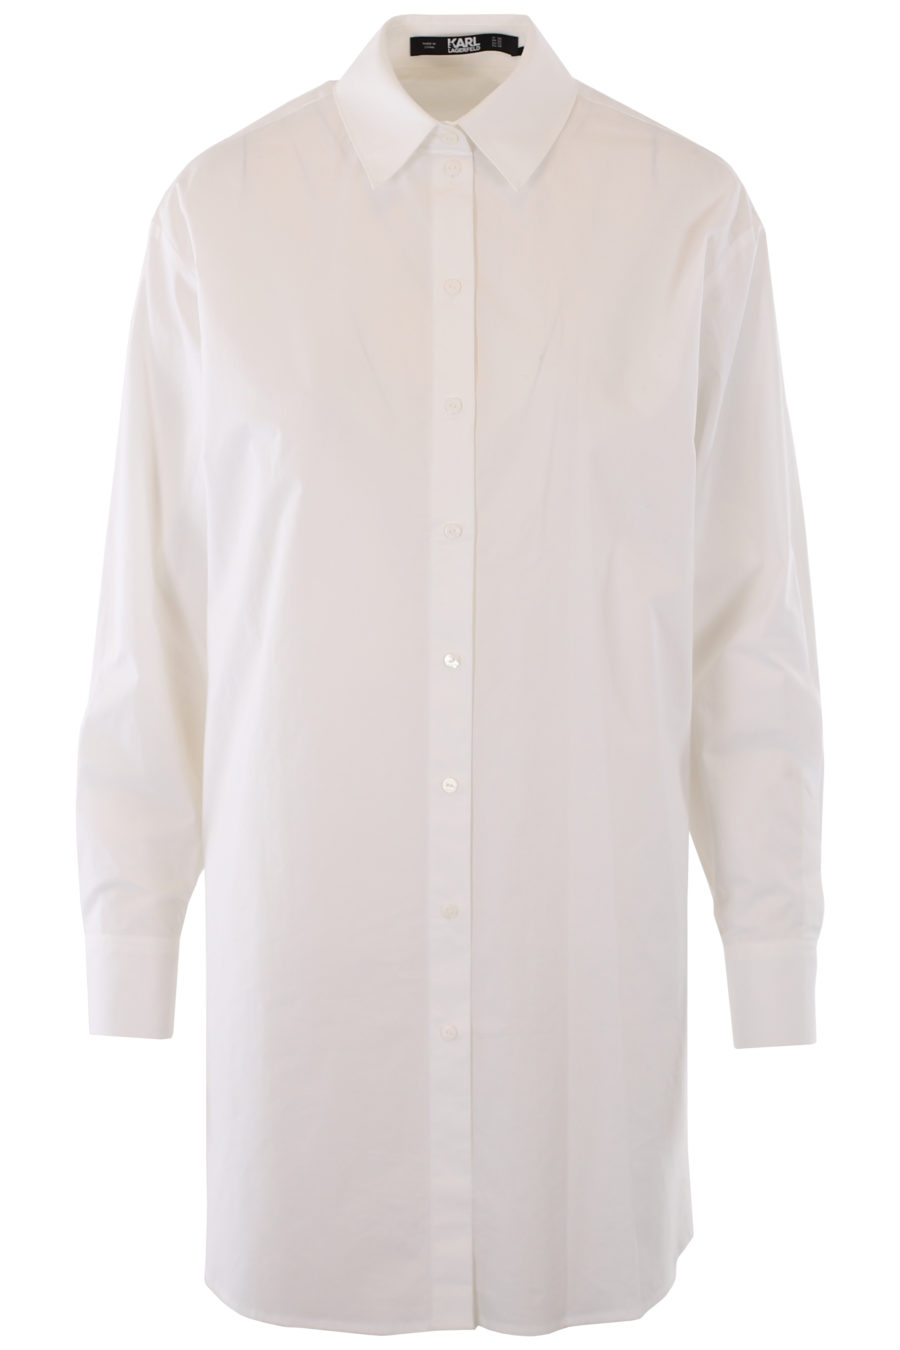 Camisa blanca larga con logo y detalles bordados - IMG 1242